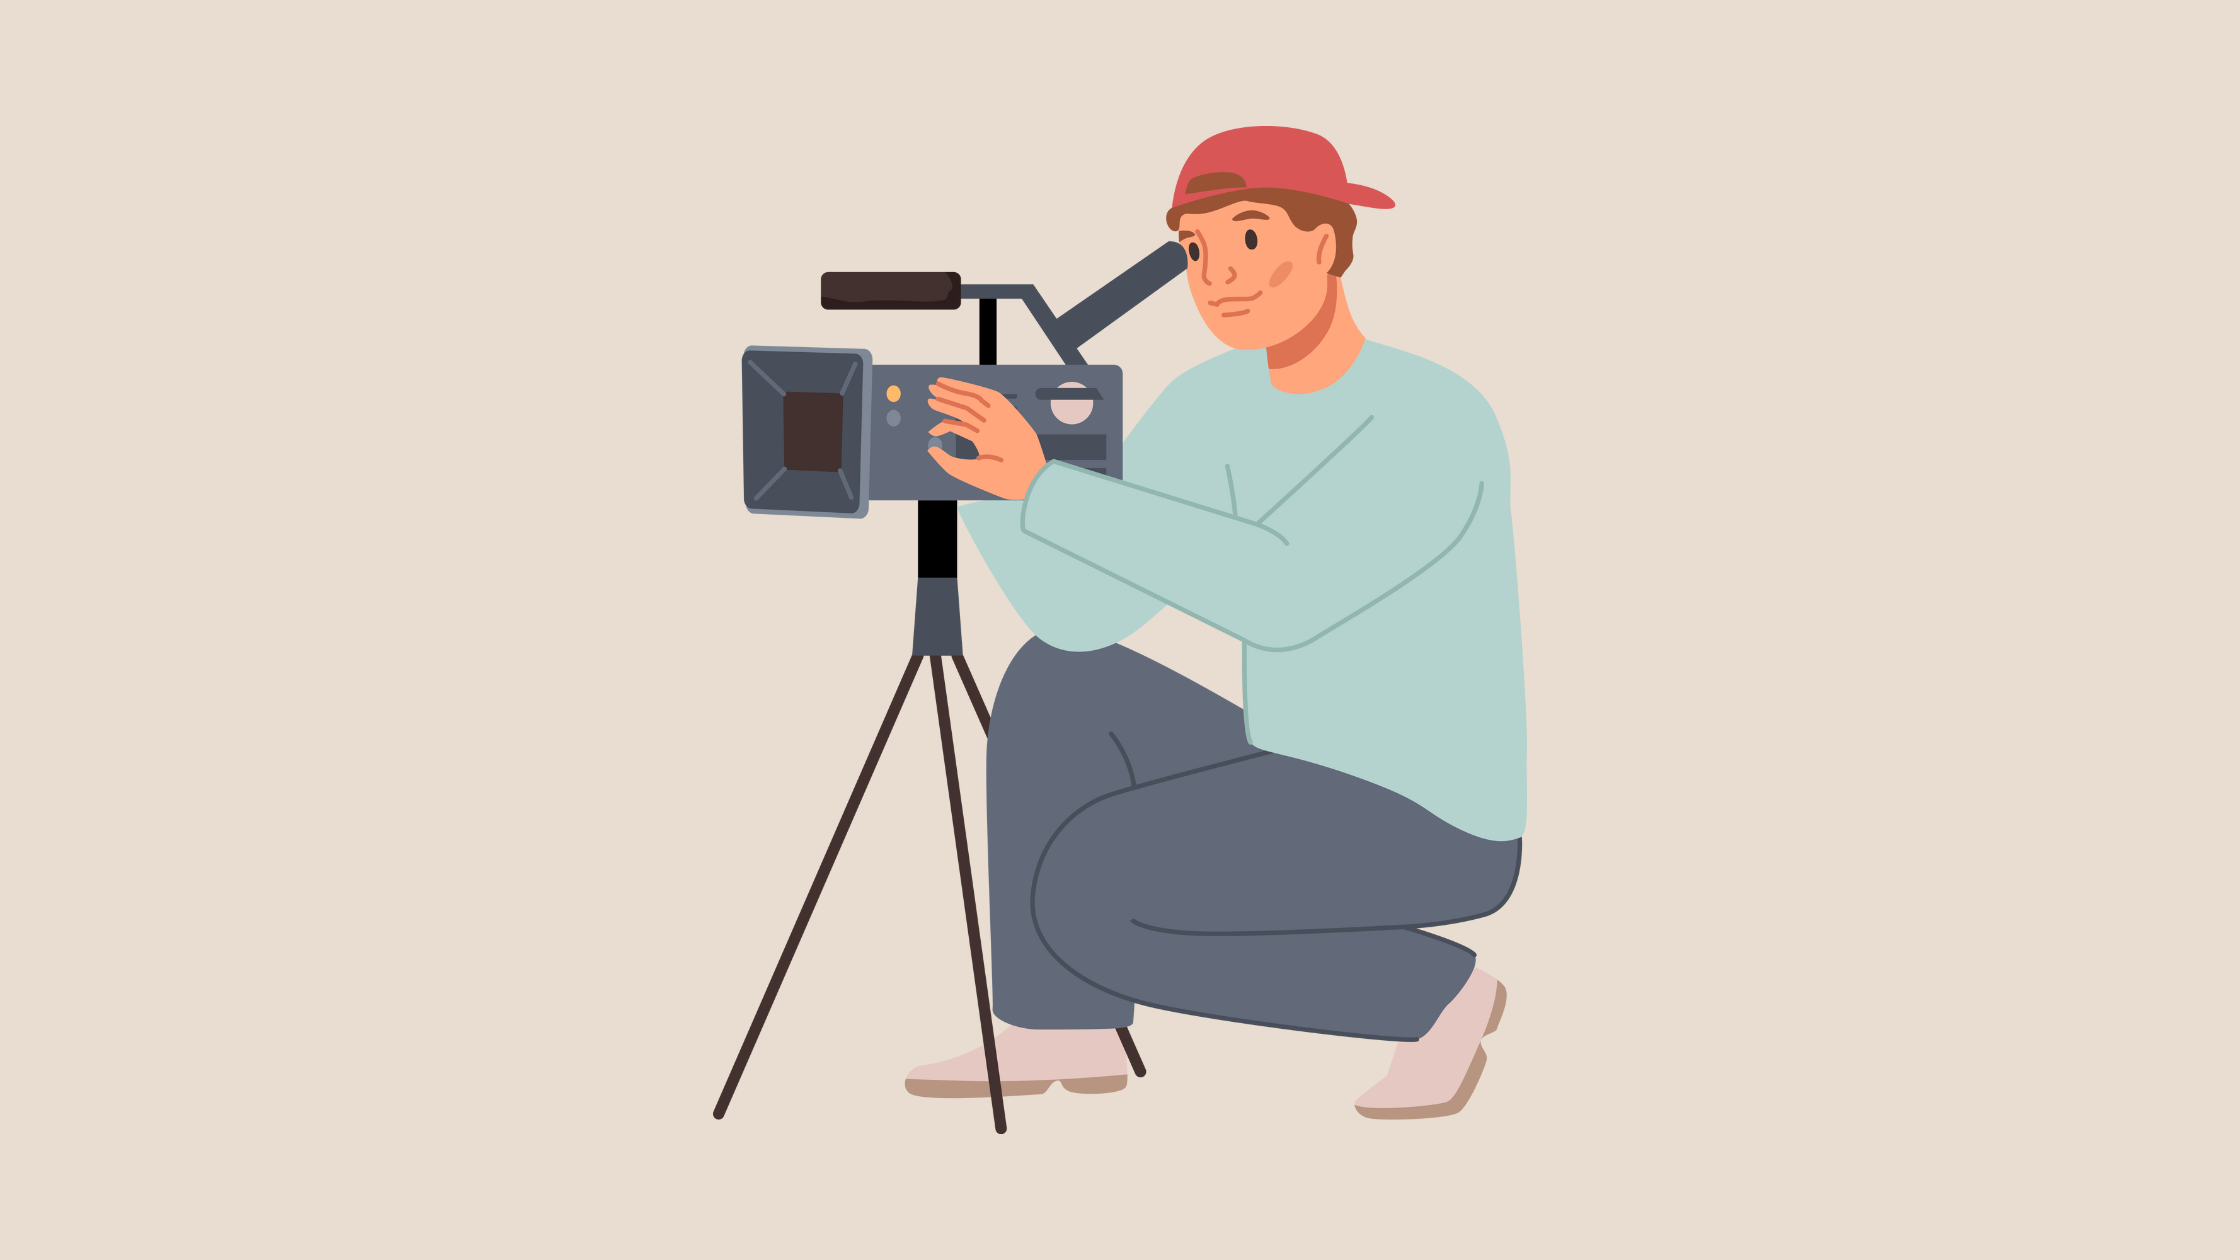 A man taking video shooting.